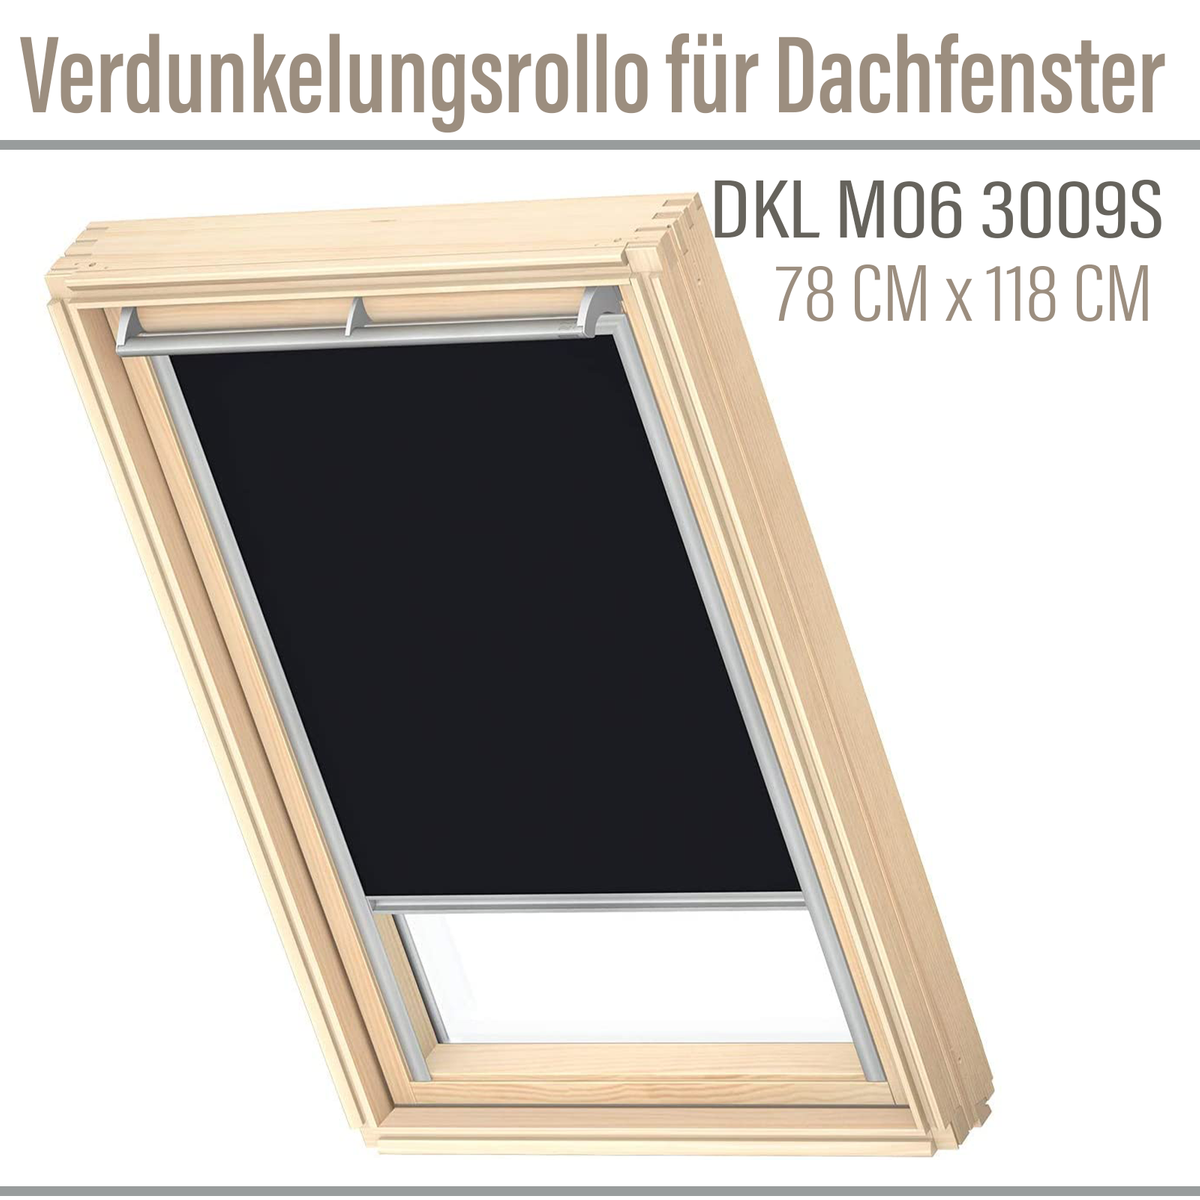 VELUX DKL M06 3009S Verdunkelungsrollo 78x118 Silberne Seitenschienen  Schwarz schwarz | Haus und Garten \ Innenräume \ Fensterabdeckung \  Sichtschutzrollo Fensterabdeckung |